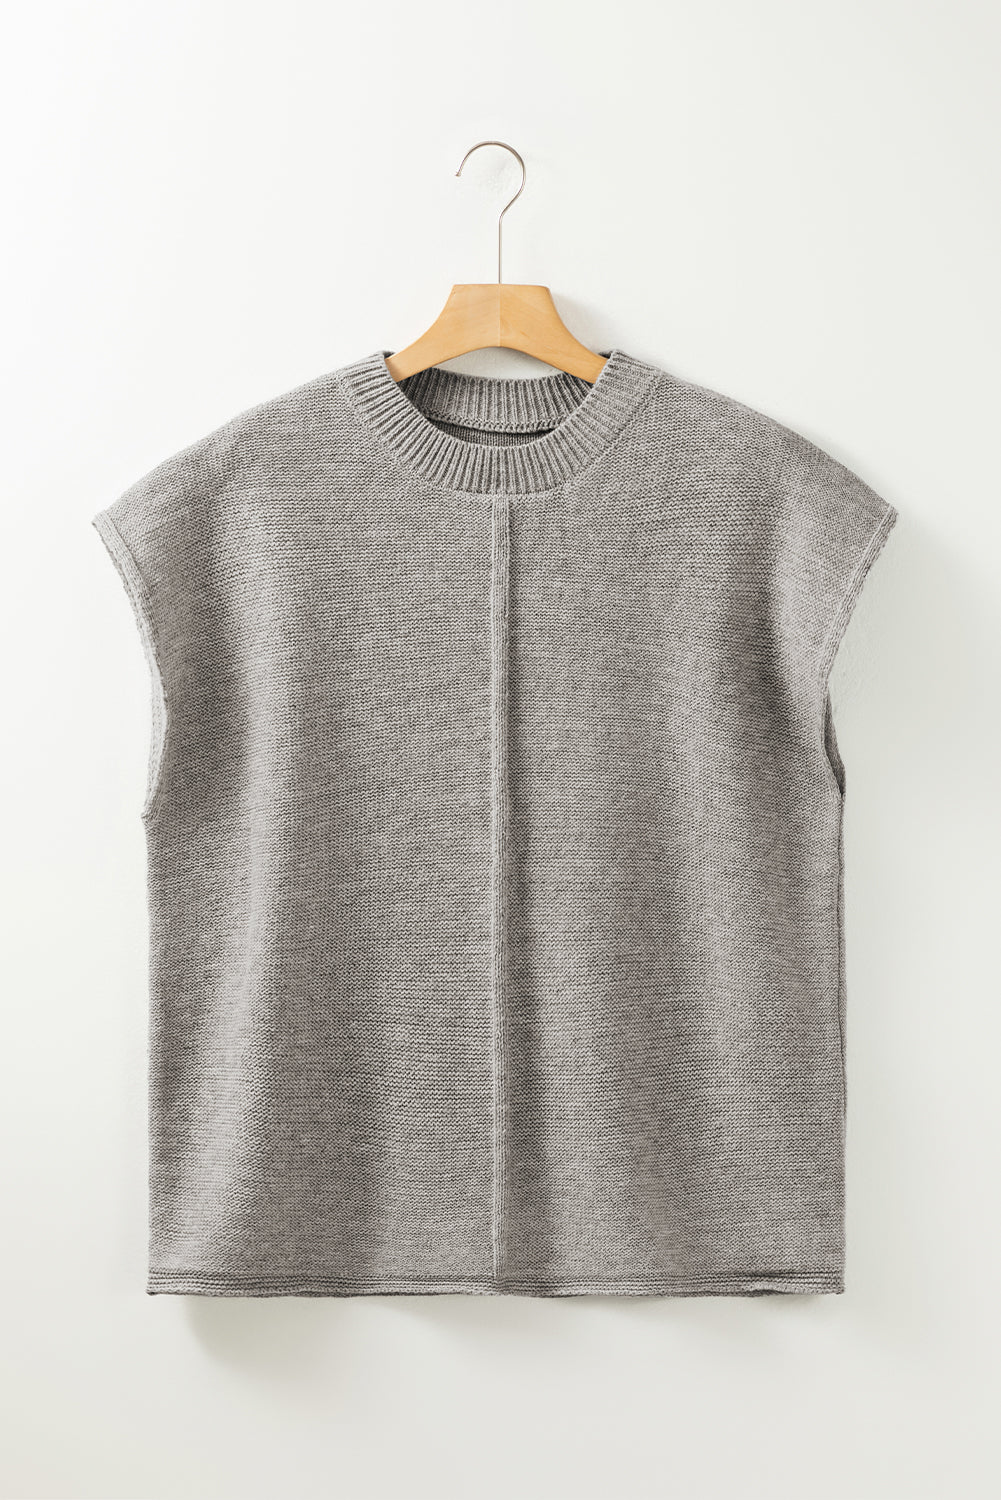 Siv pulover s kratkimi rokavi in ​​okroglim izrezom na sredini